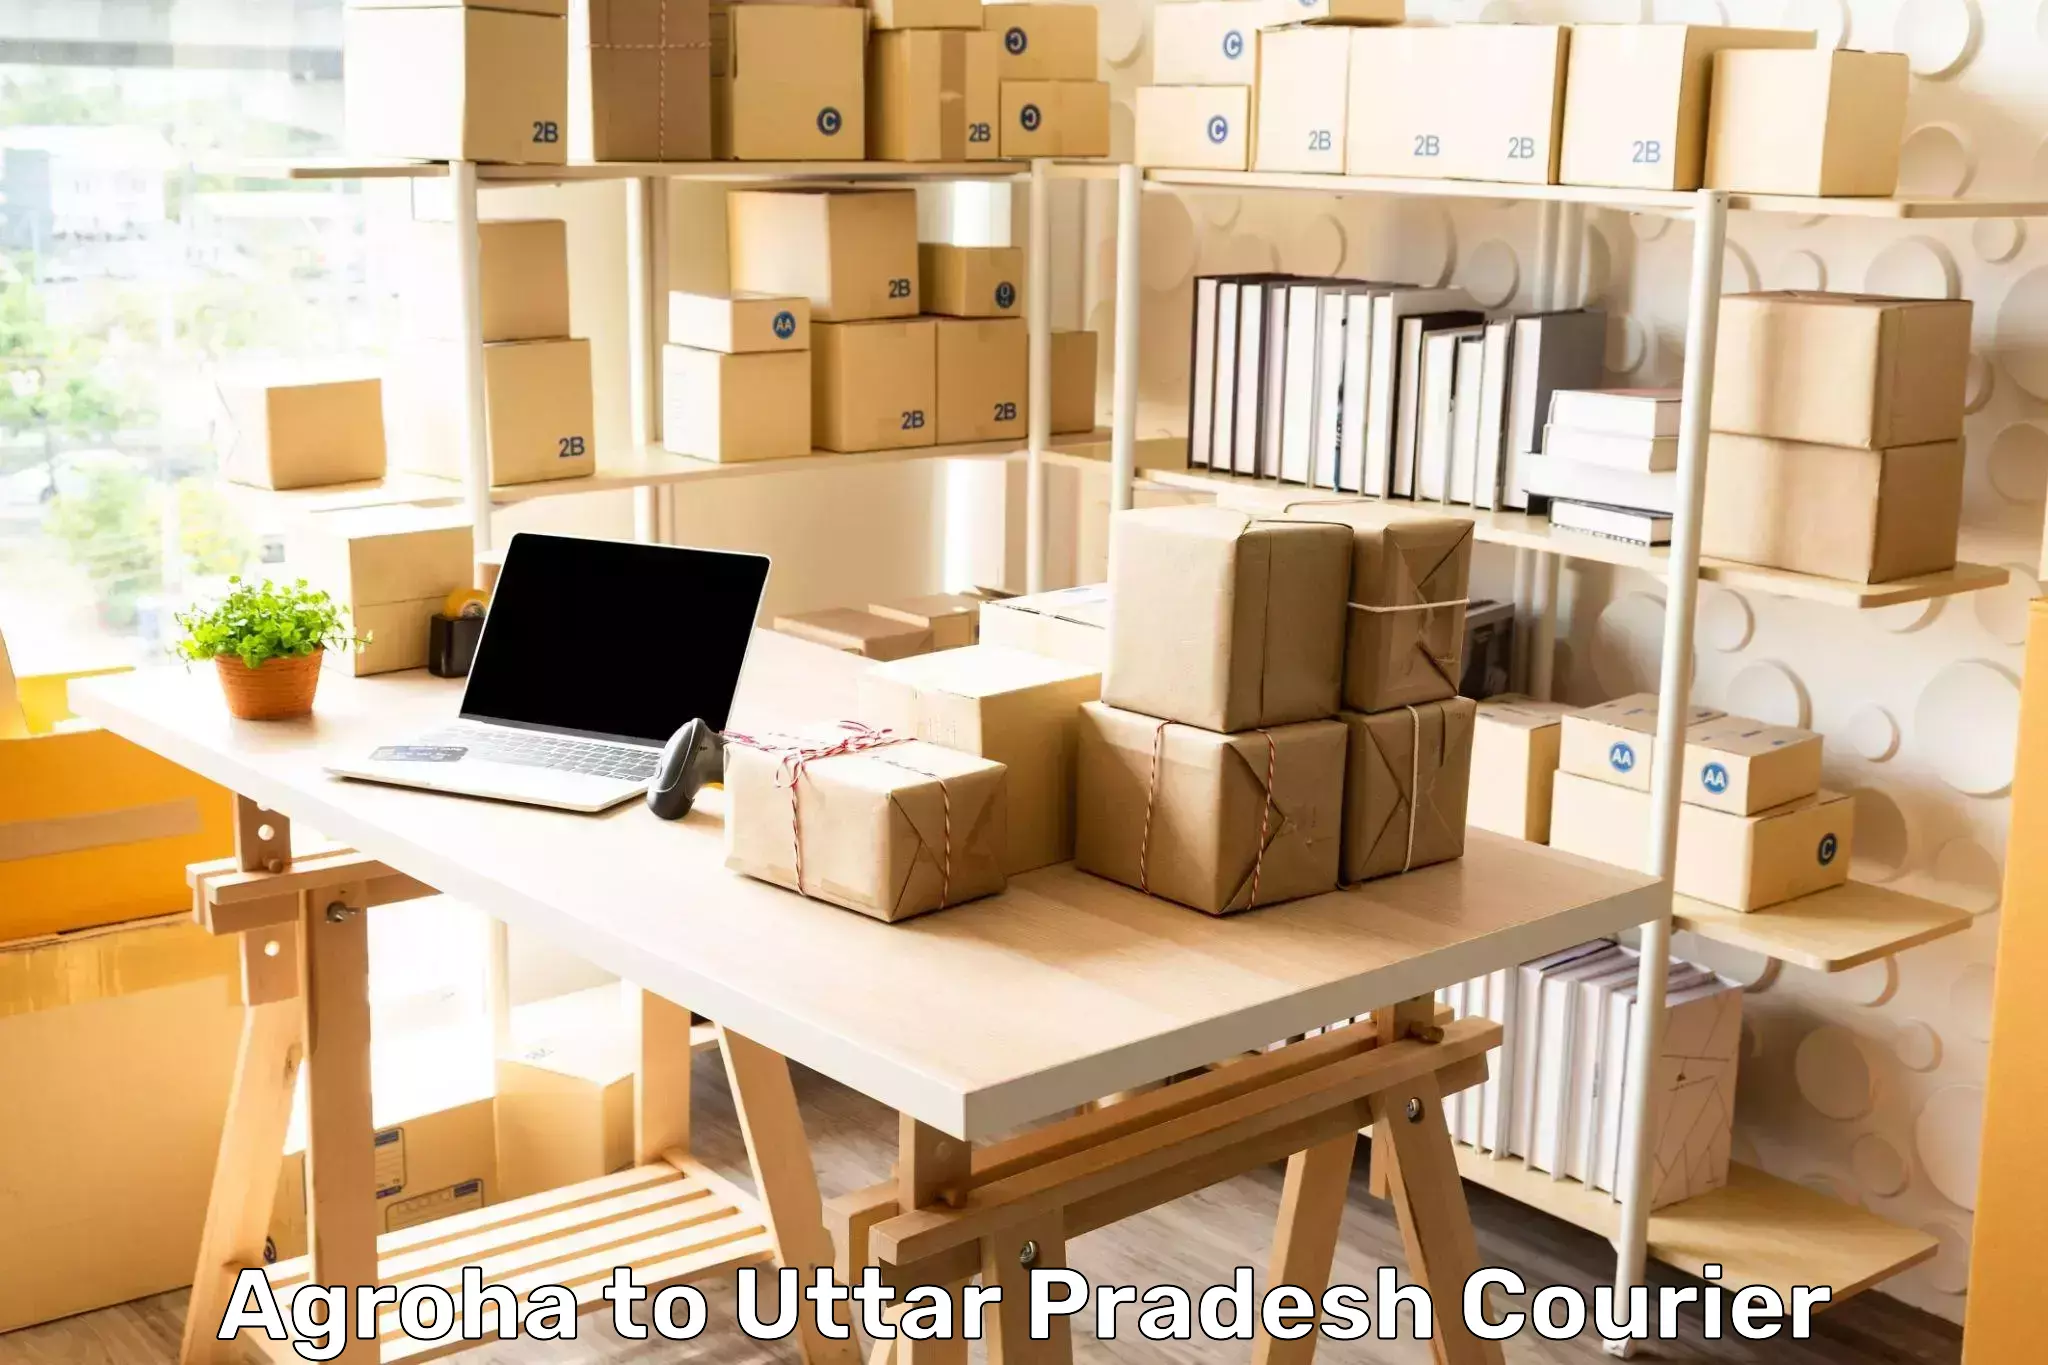 Affordable parcel service Agroha to Kurebhar